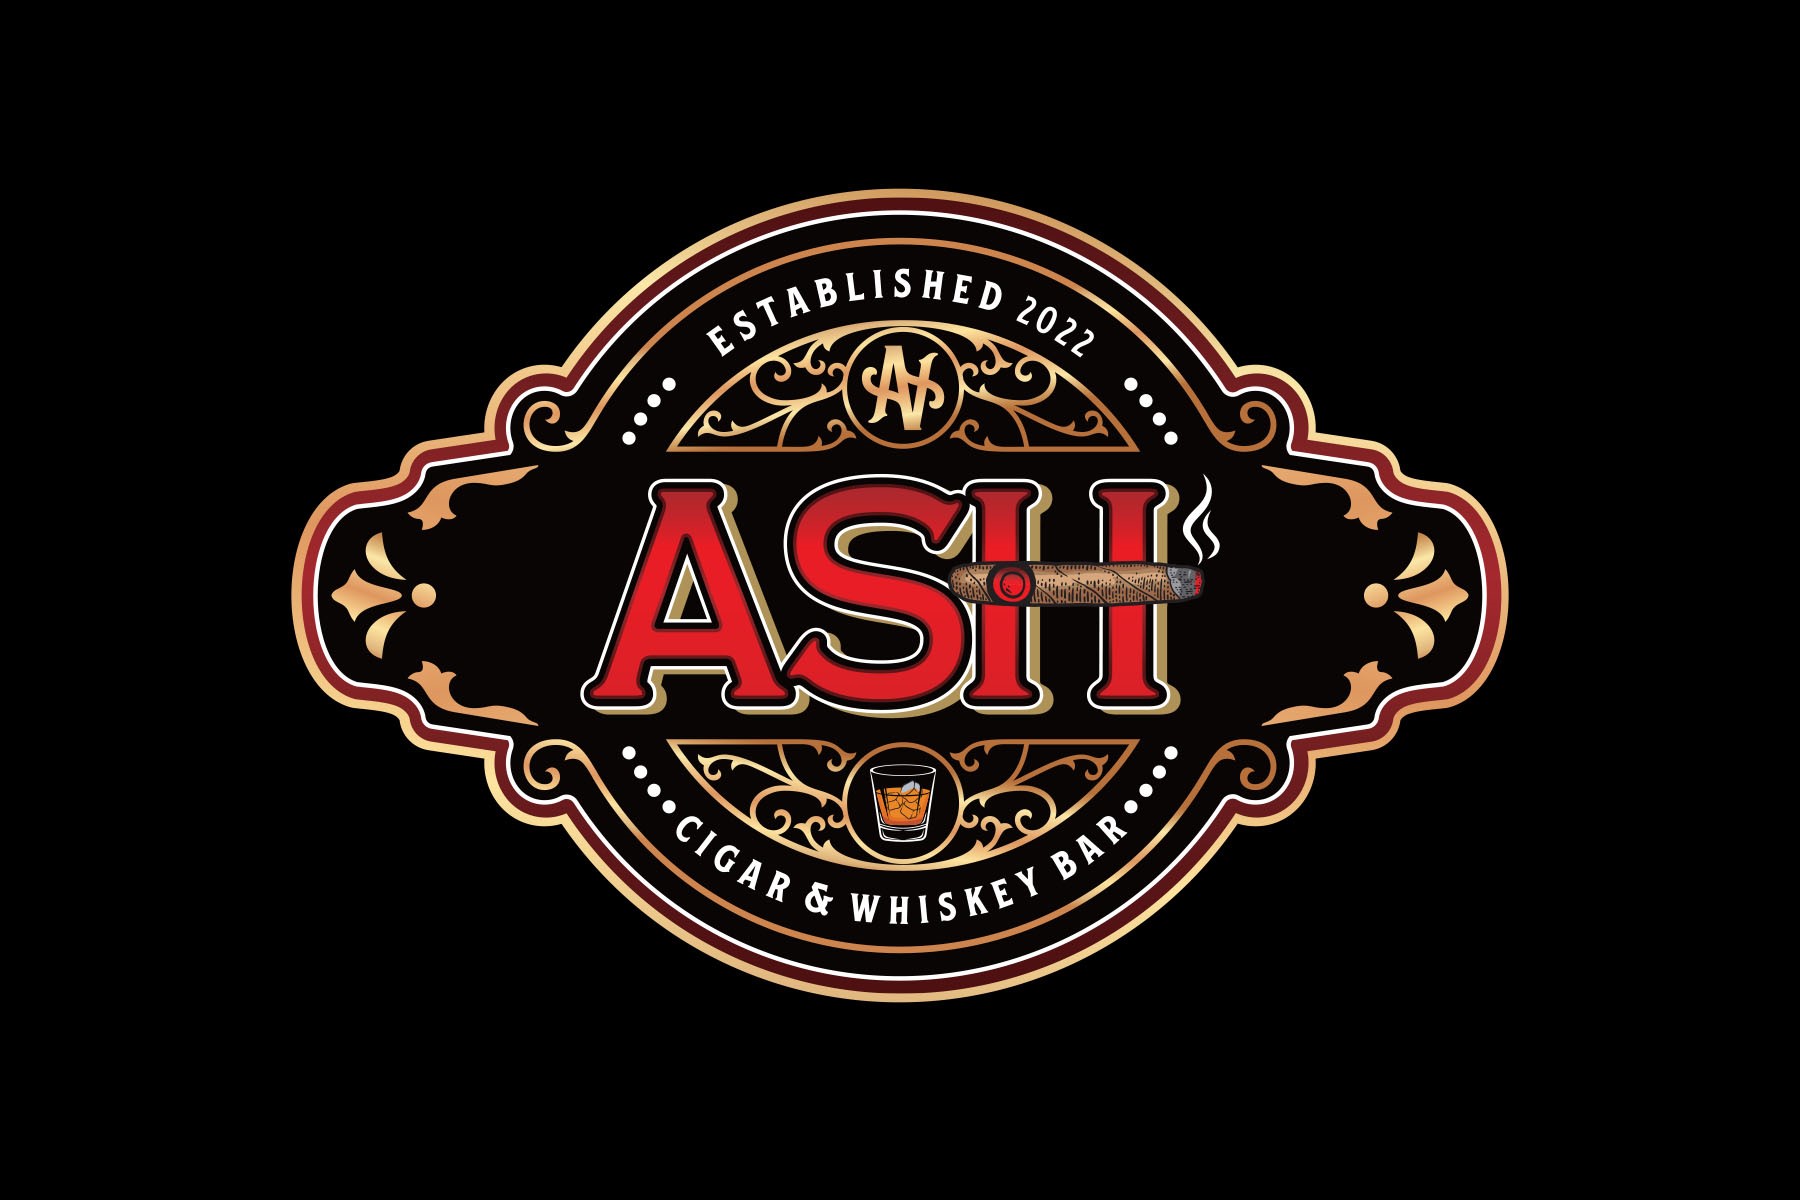 ASH Cigar & Whiskey Bar